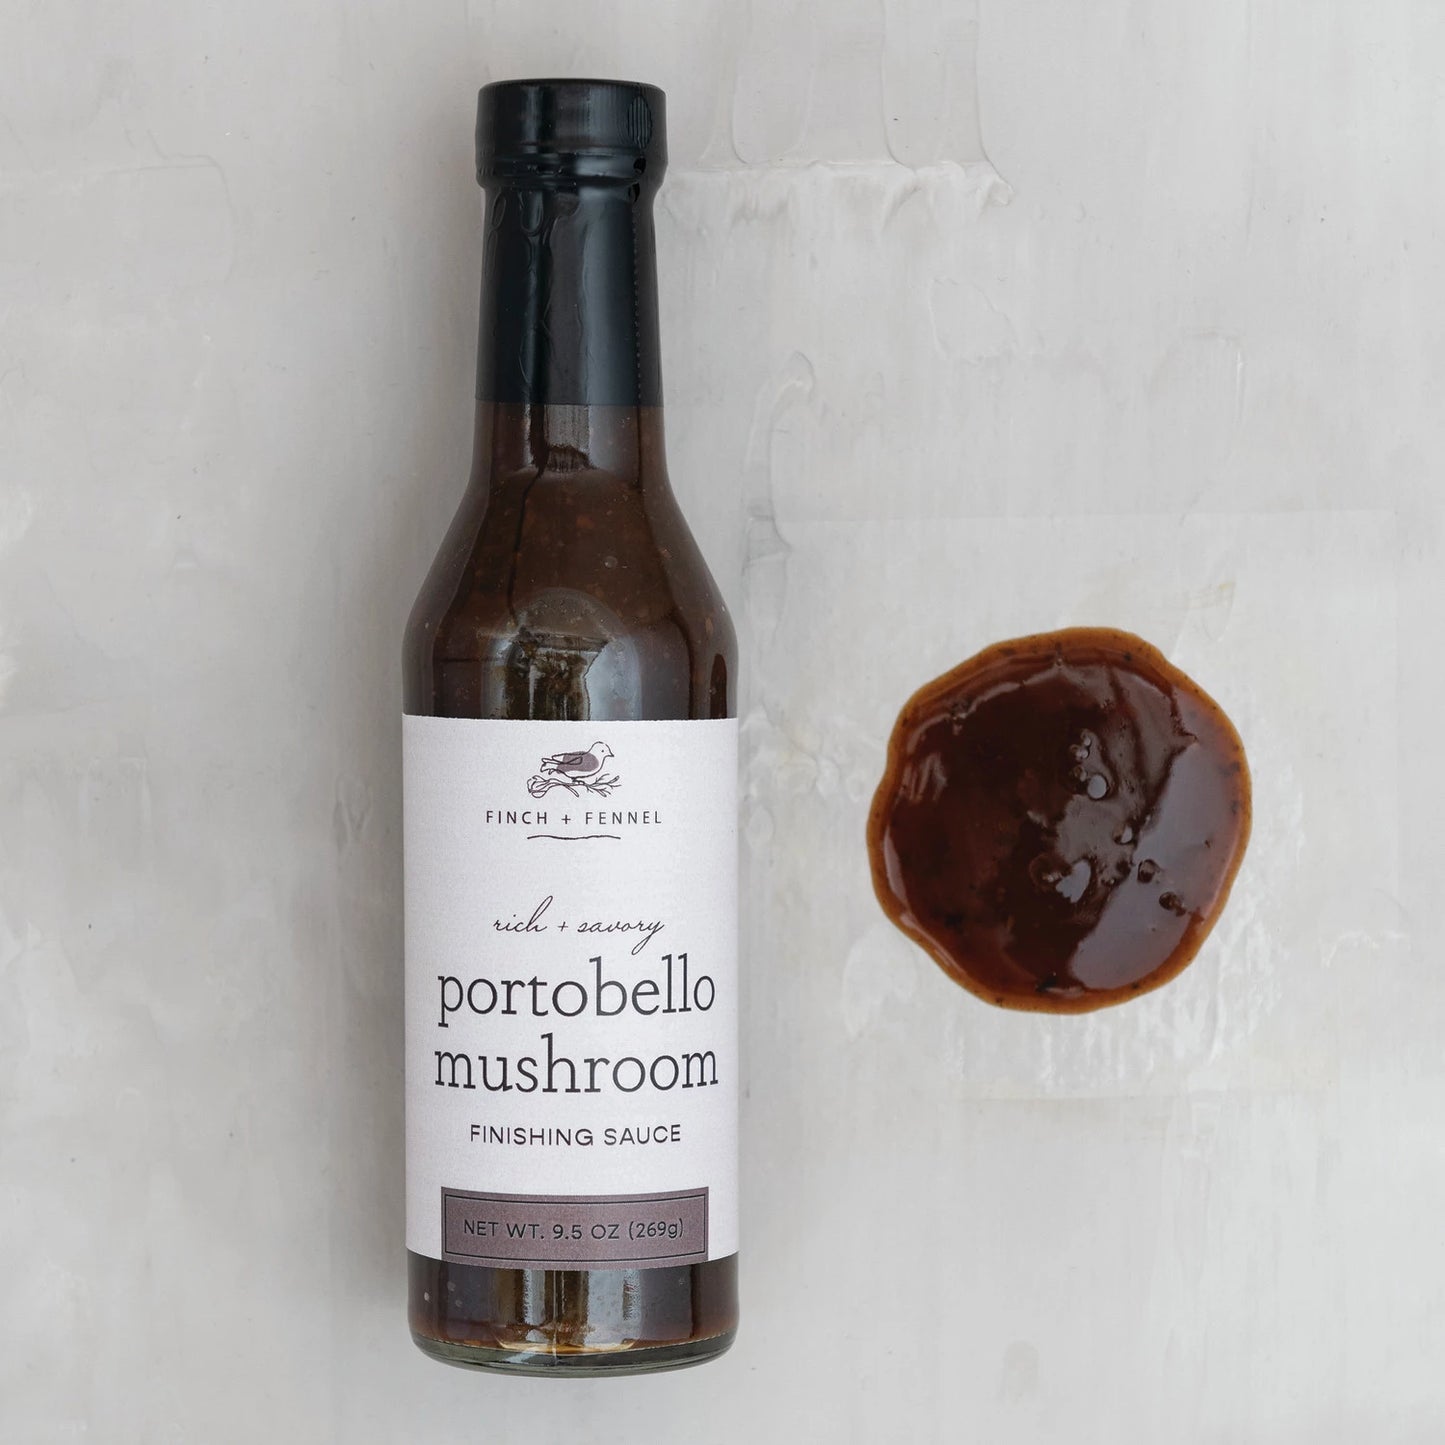 Finch + Fennel Portobello Mushroom Sauce